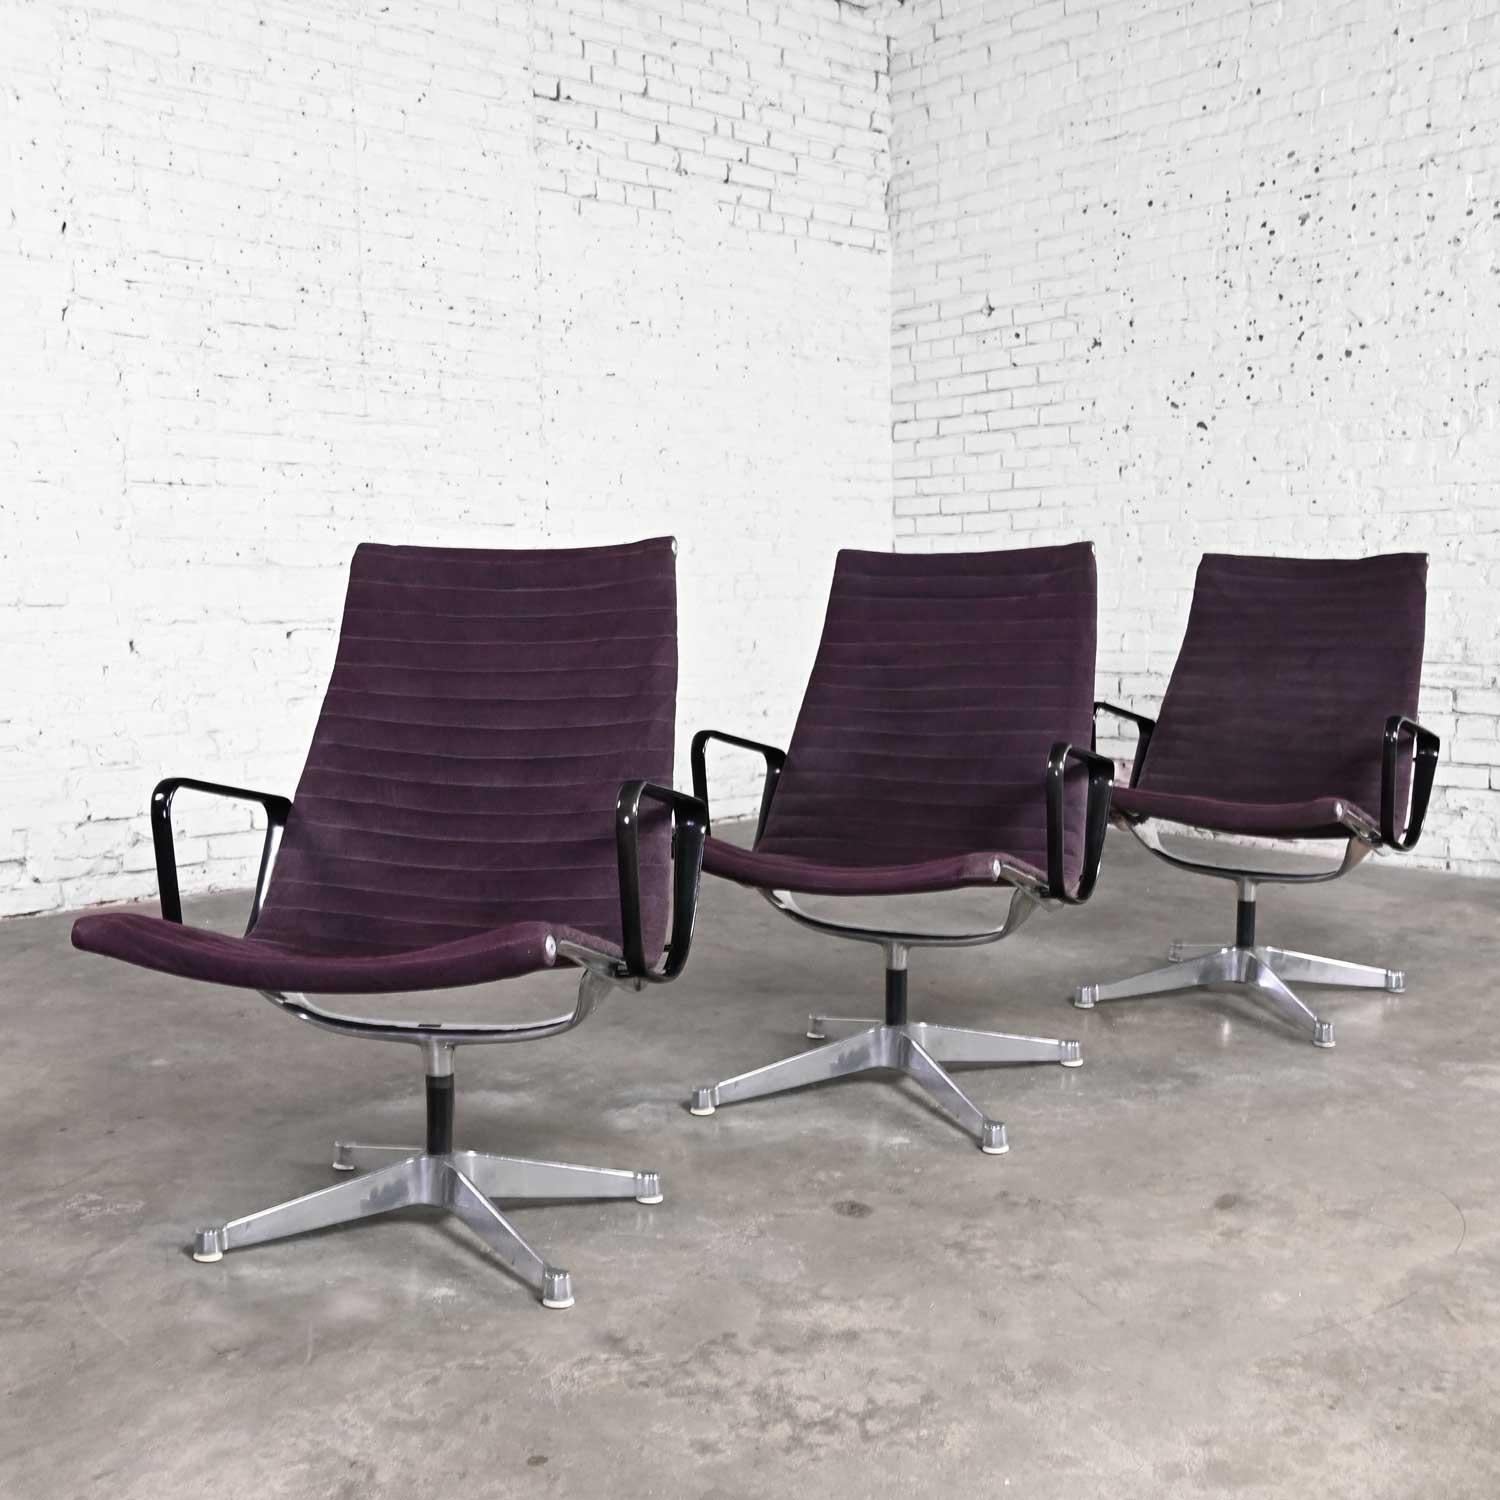 Wunderschöner MCM-Stuhl (auch bekannt als Mid-Century Modern) von Charles & Ray Eames für Herman Miller Aluminum Group mit hoher Rückenlehne. Er besteht aus einem Aluminiumrahmen, einem 4-Zacken-Aluminiumsockel, Nylonfüßen, einer schwarzen